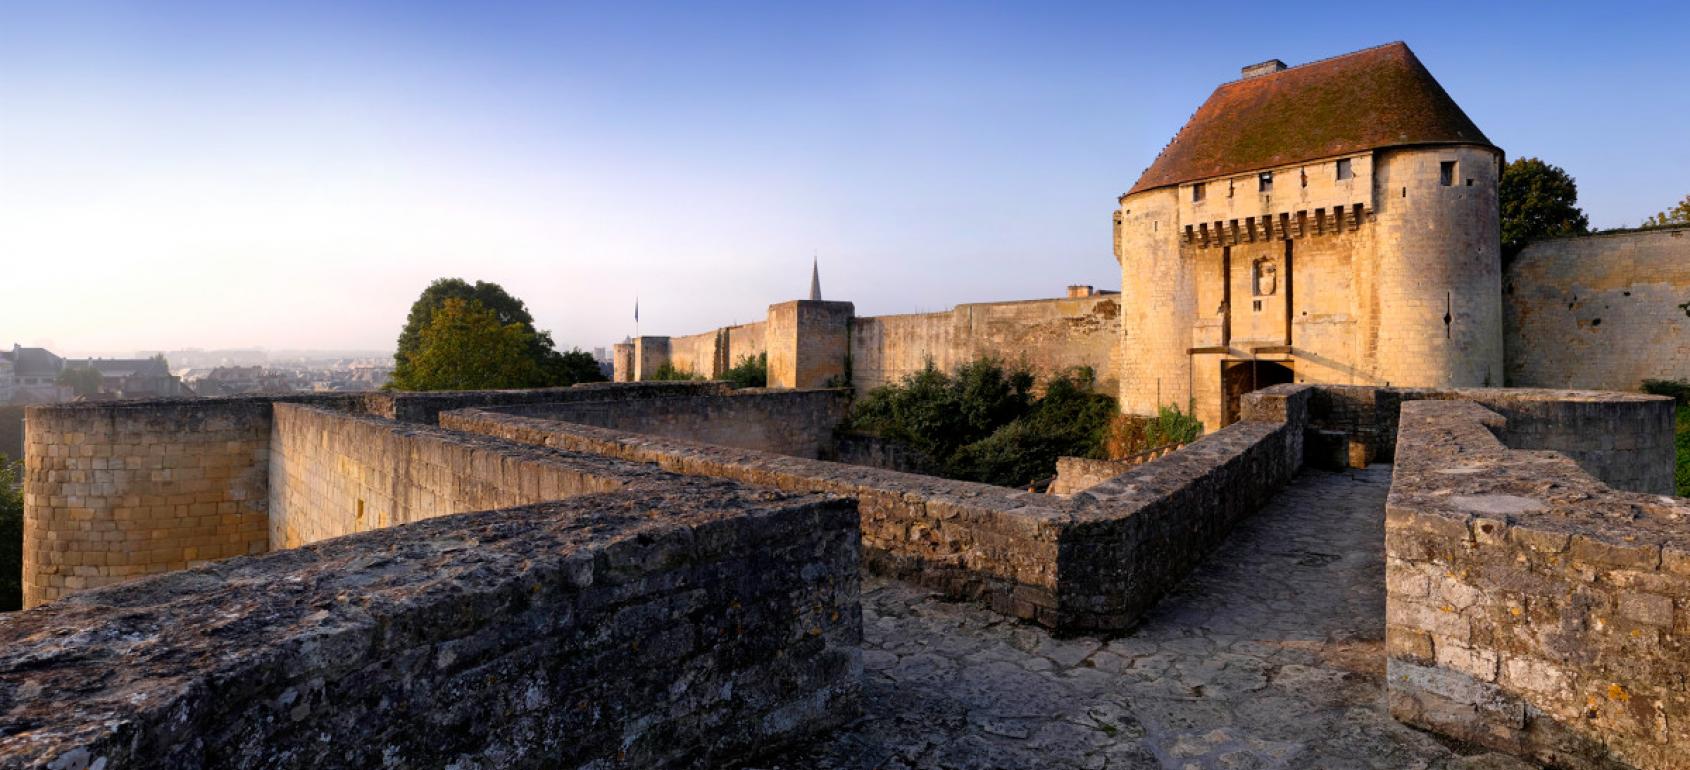 La Normandie mérite-t-elle d’être méprisée dans le tréfonds de son héritage ?